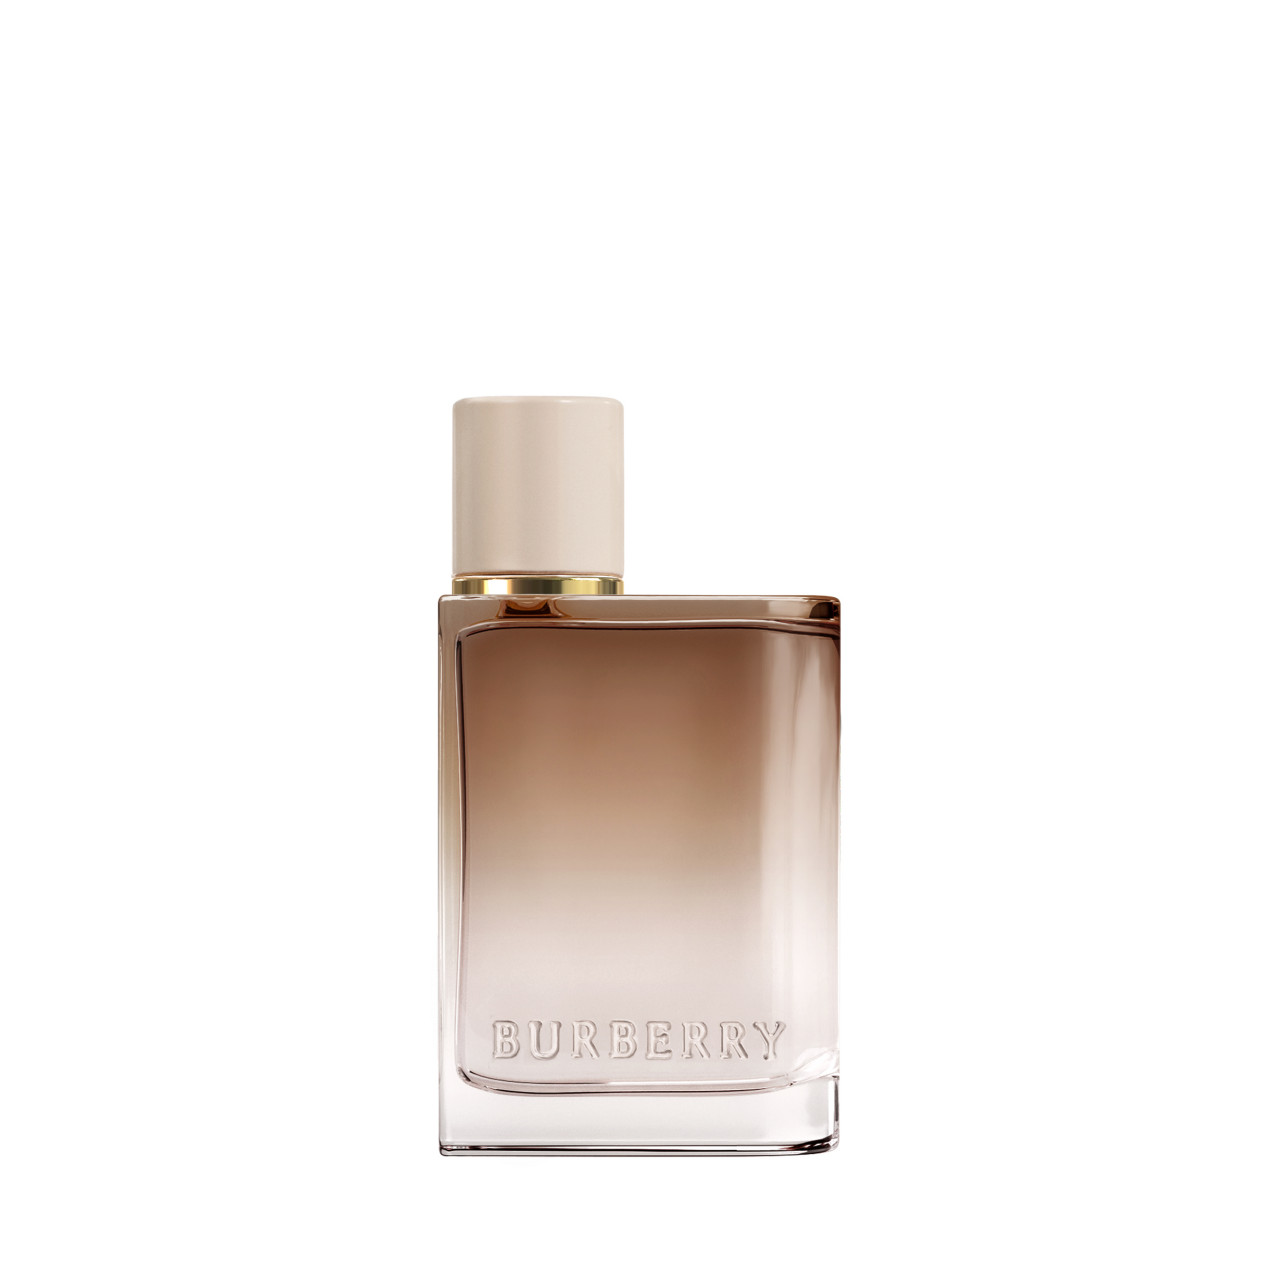 Burberry - Her Intense Eau de Parfum -  30ml